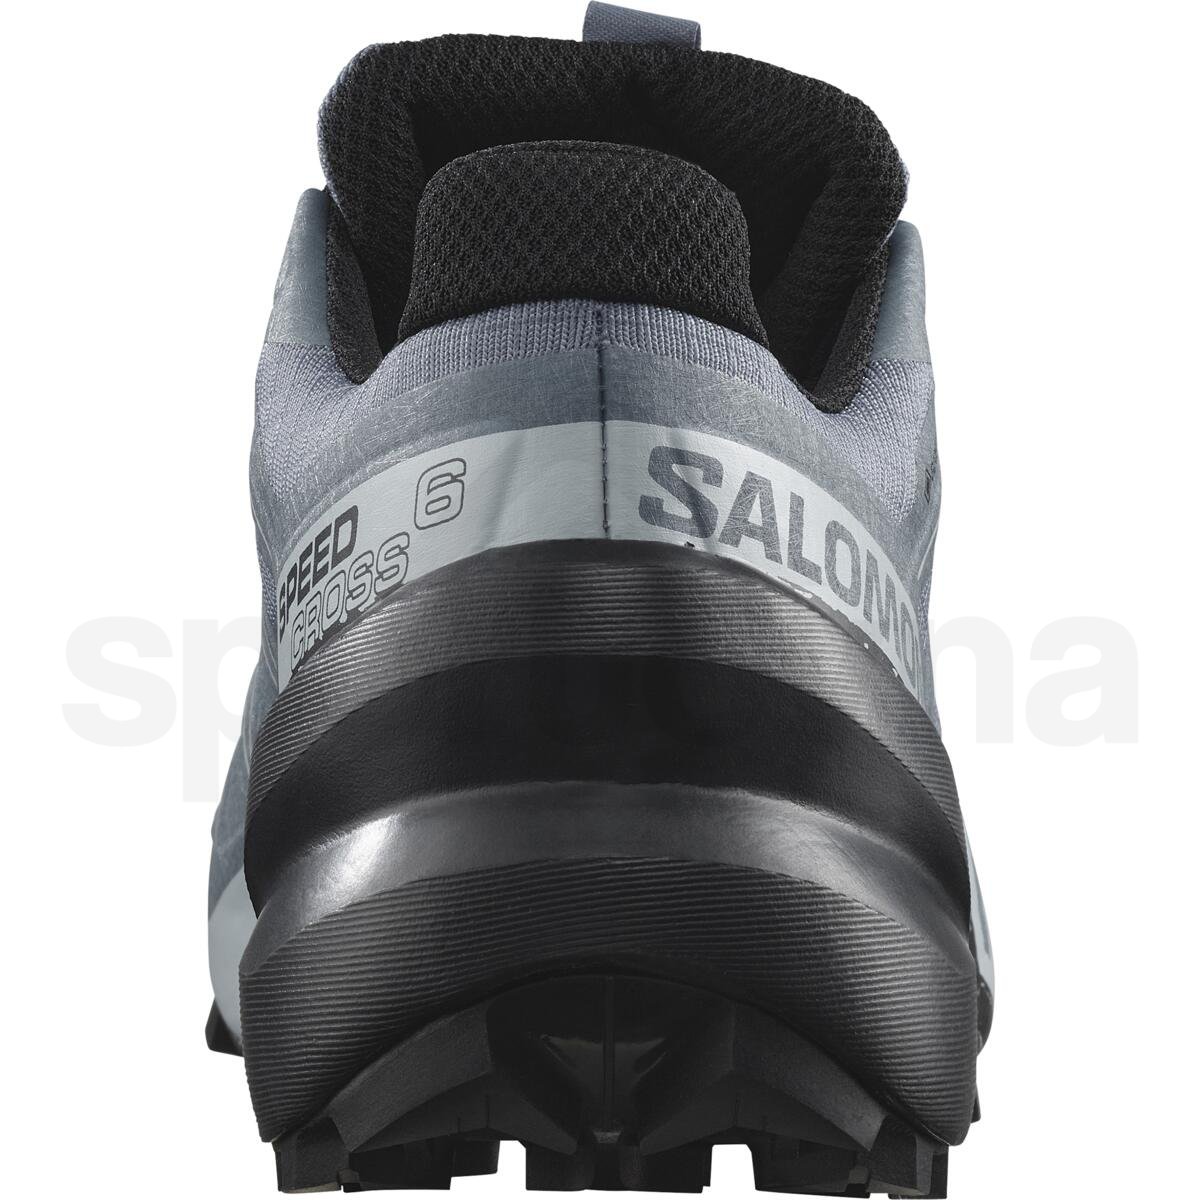 Obuv Salomon Speedcross 6 GTX W - šedá/černá